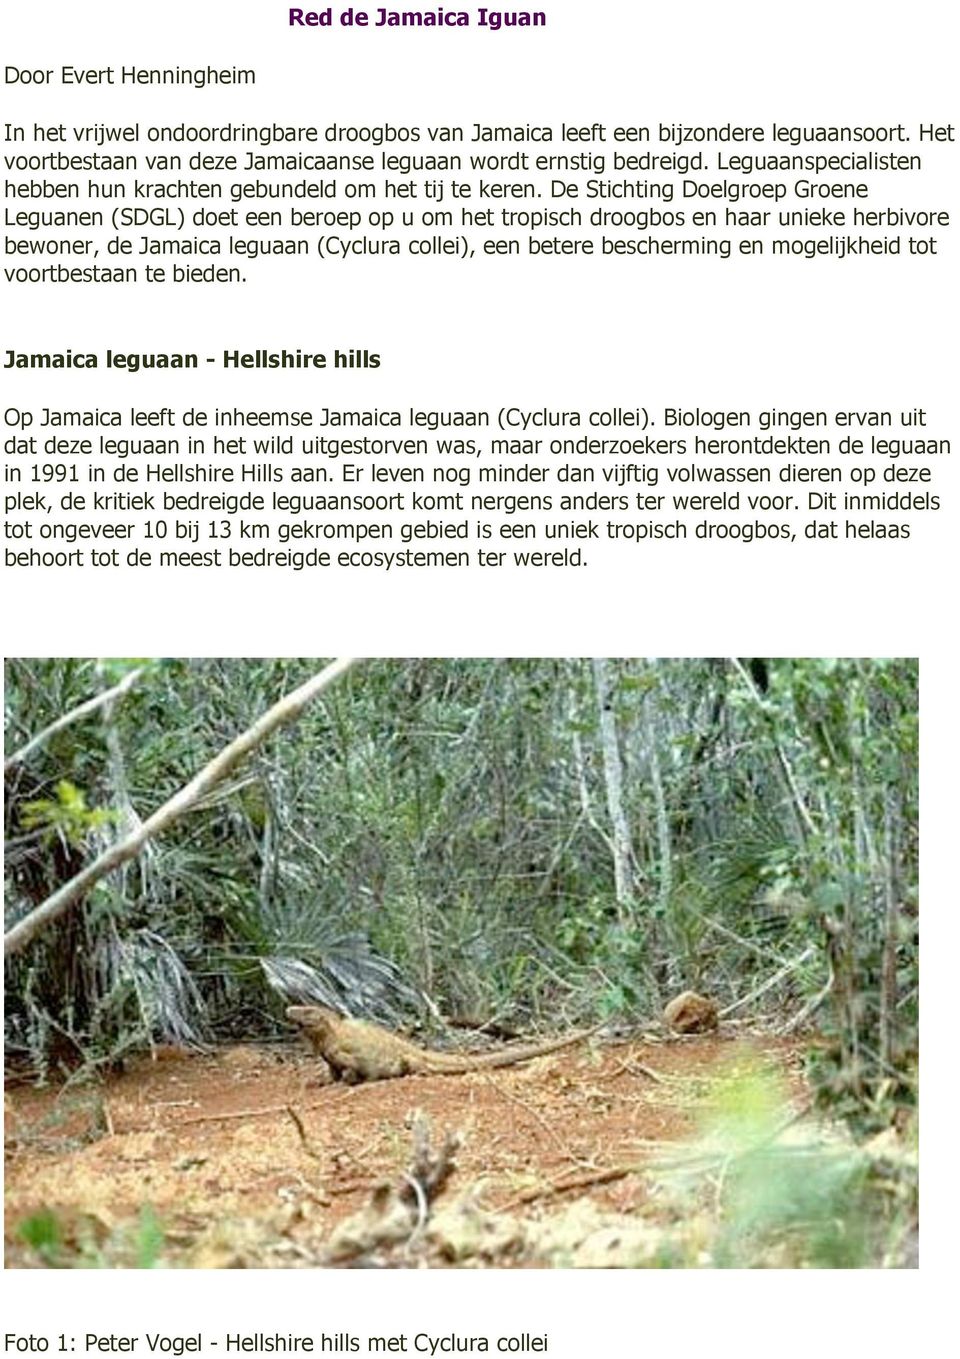 De Stichting Doelgroep Groene Leguanen (SDGL) doet een beroep op u om het tropisch droogbos en haar unieke herbivore bewoner, de Jamaica leguaan (Cyclura collei), een betere bescherming en